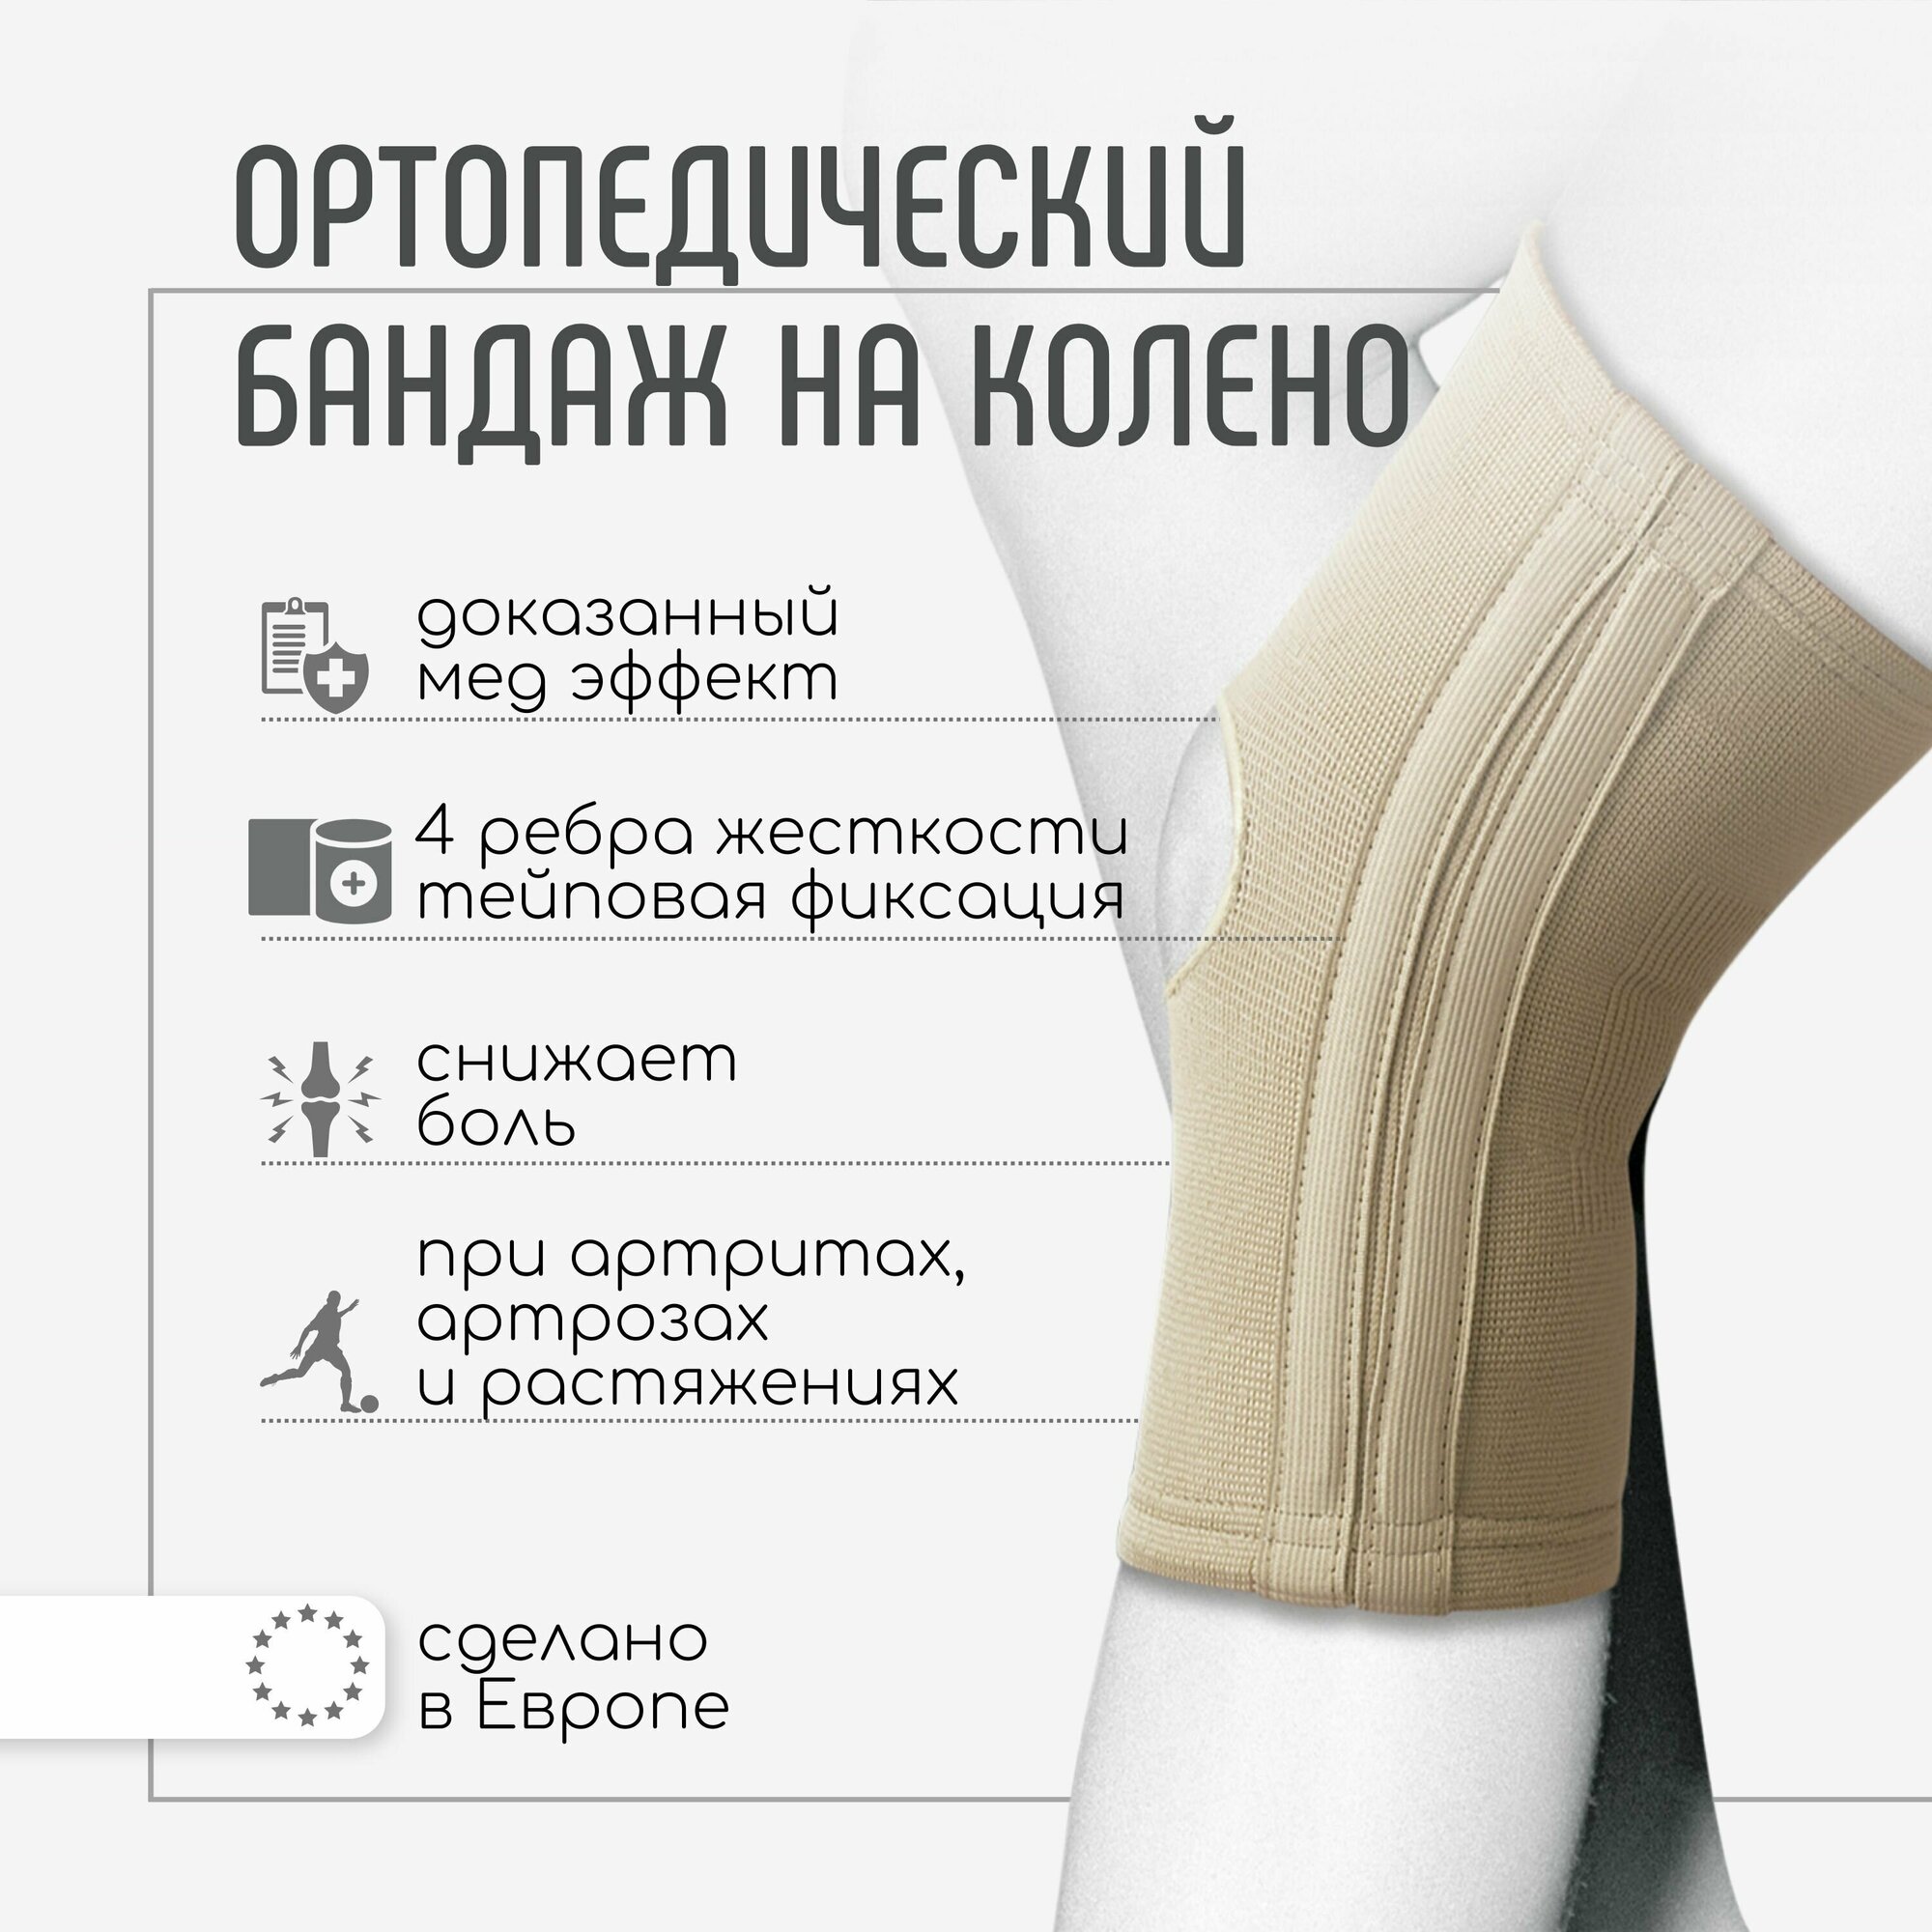 Эластичные наколенники ортопедические для суставов Orliman Испания бандаж на коленный сустав с боковыми фиксаторами TN-211 при артрозе колена